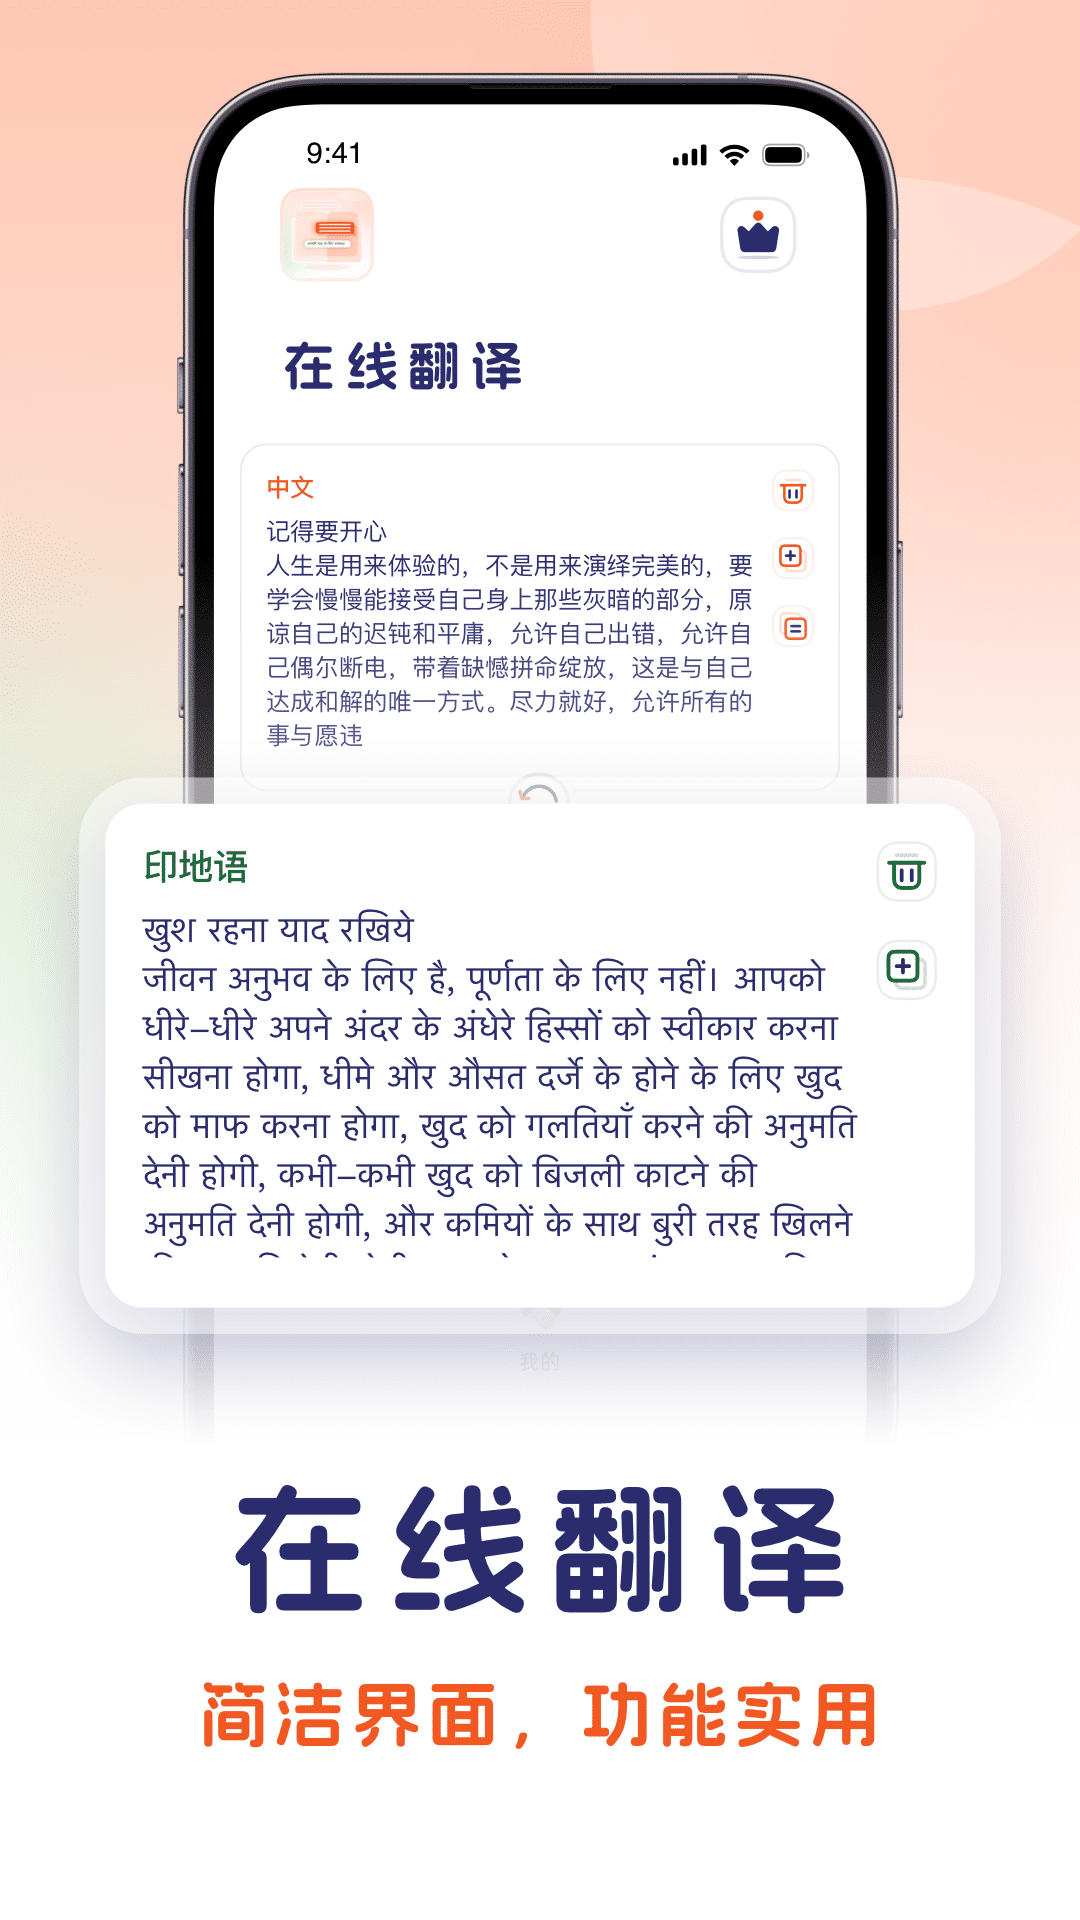 印地语翻译中文转化器-图1